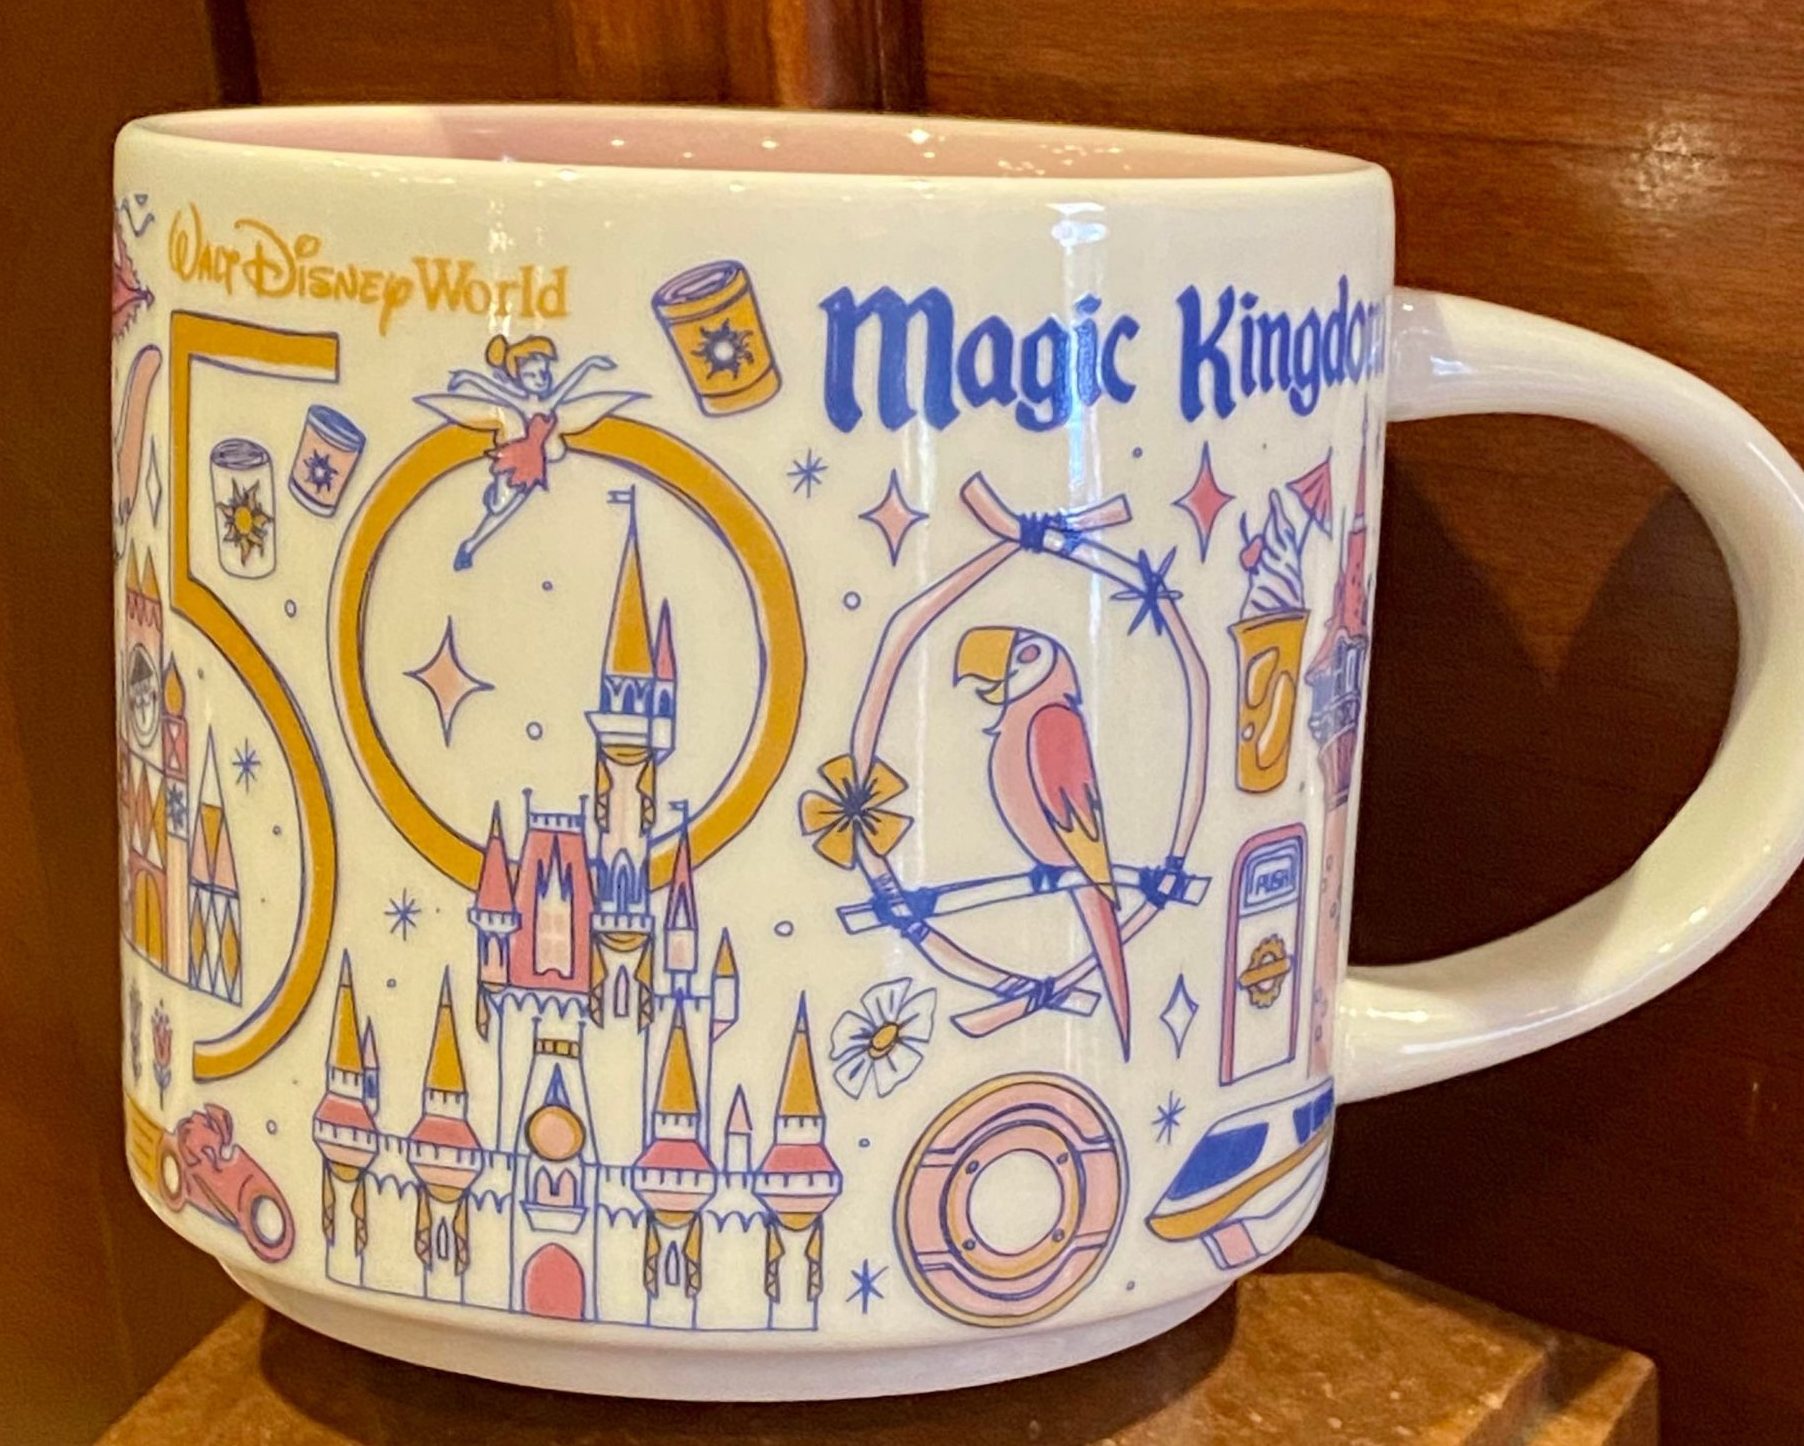 Starbucks Magic Kingdom 50th anniversary mug